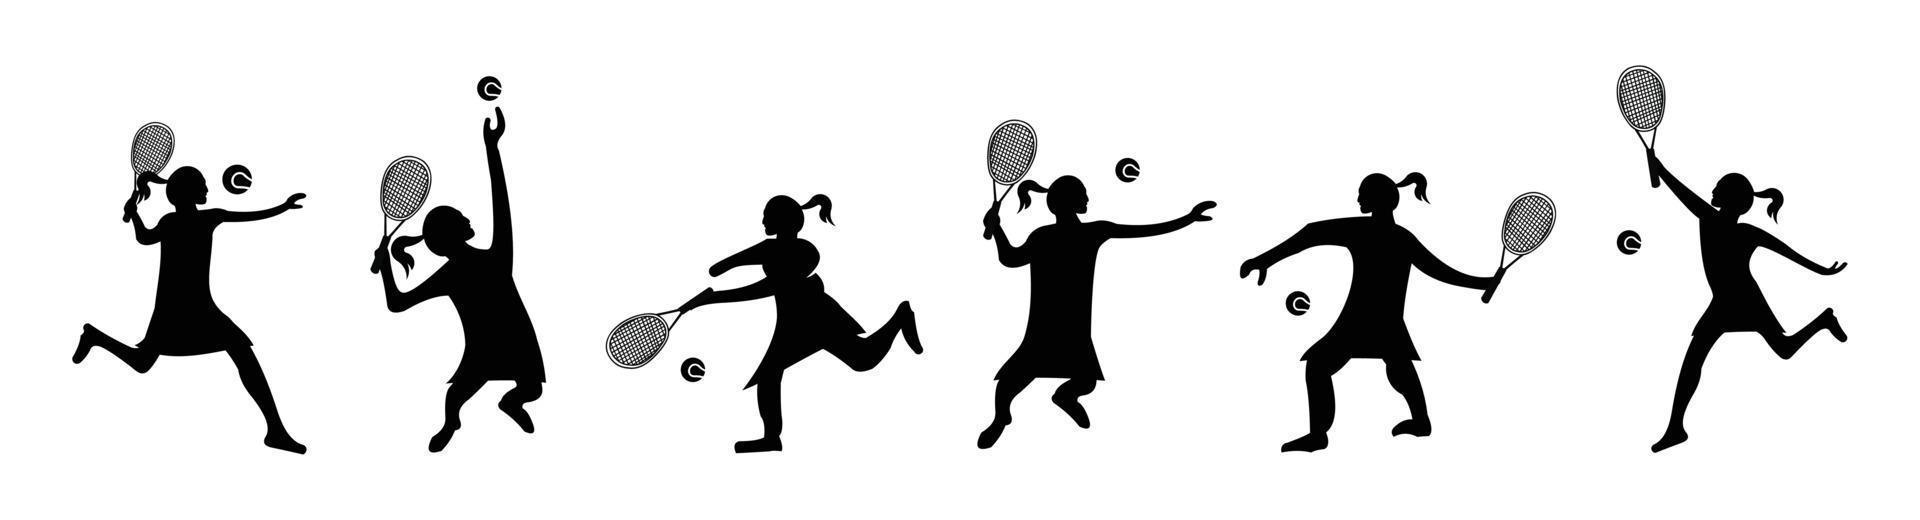 juego de jugar tenis hombres y mujeres silueta vector, jugadores de tenis en un fondo blanco y negro vector